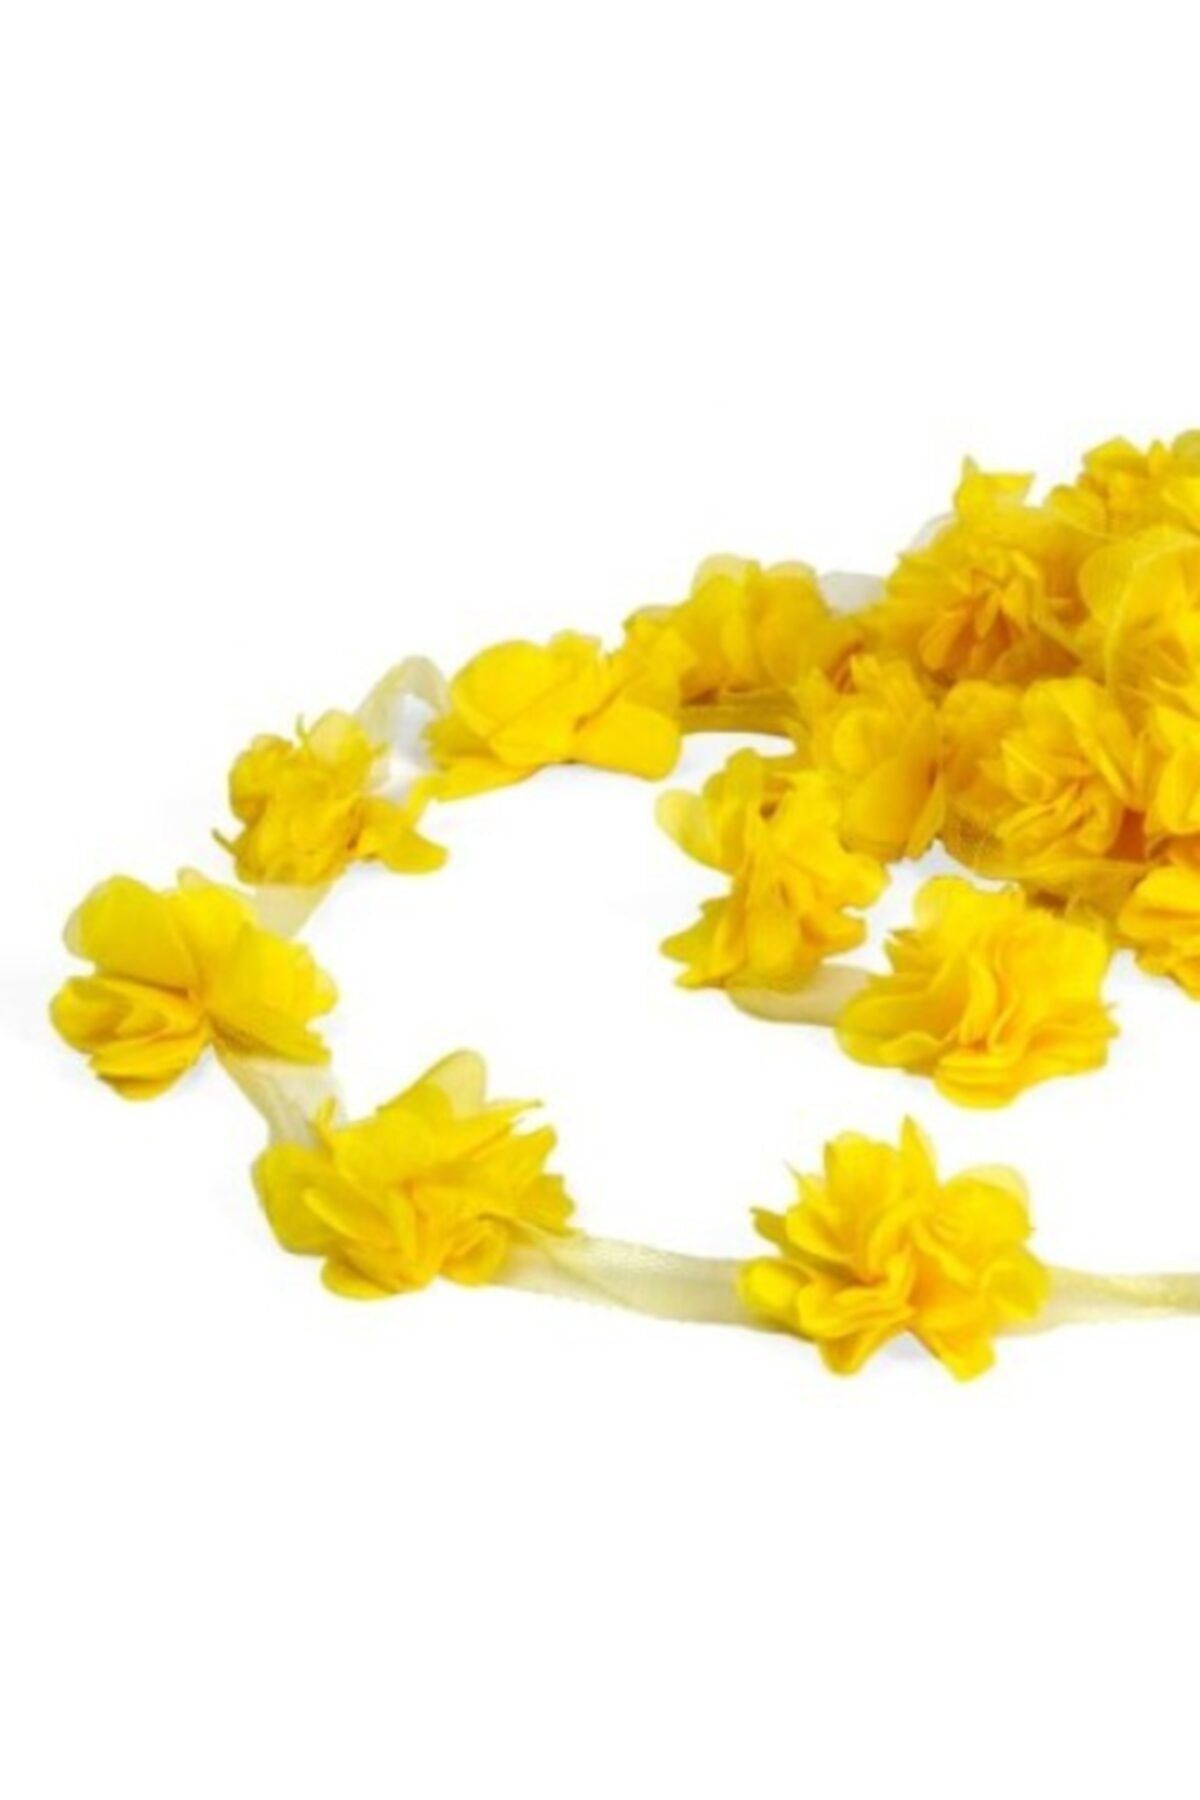 Aker Hediyelik Sarı Lazer Gül 1m Lazer Kesim Gül Süsleme Paketleme Malzemesi 12 Adet Organze Kumaş Yapay Çiçekler